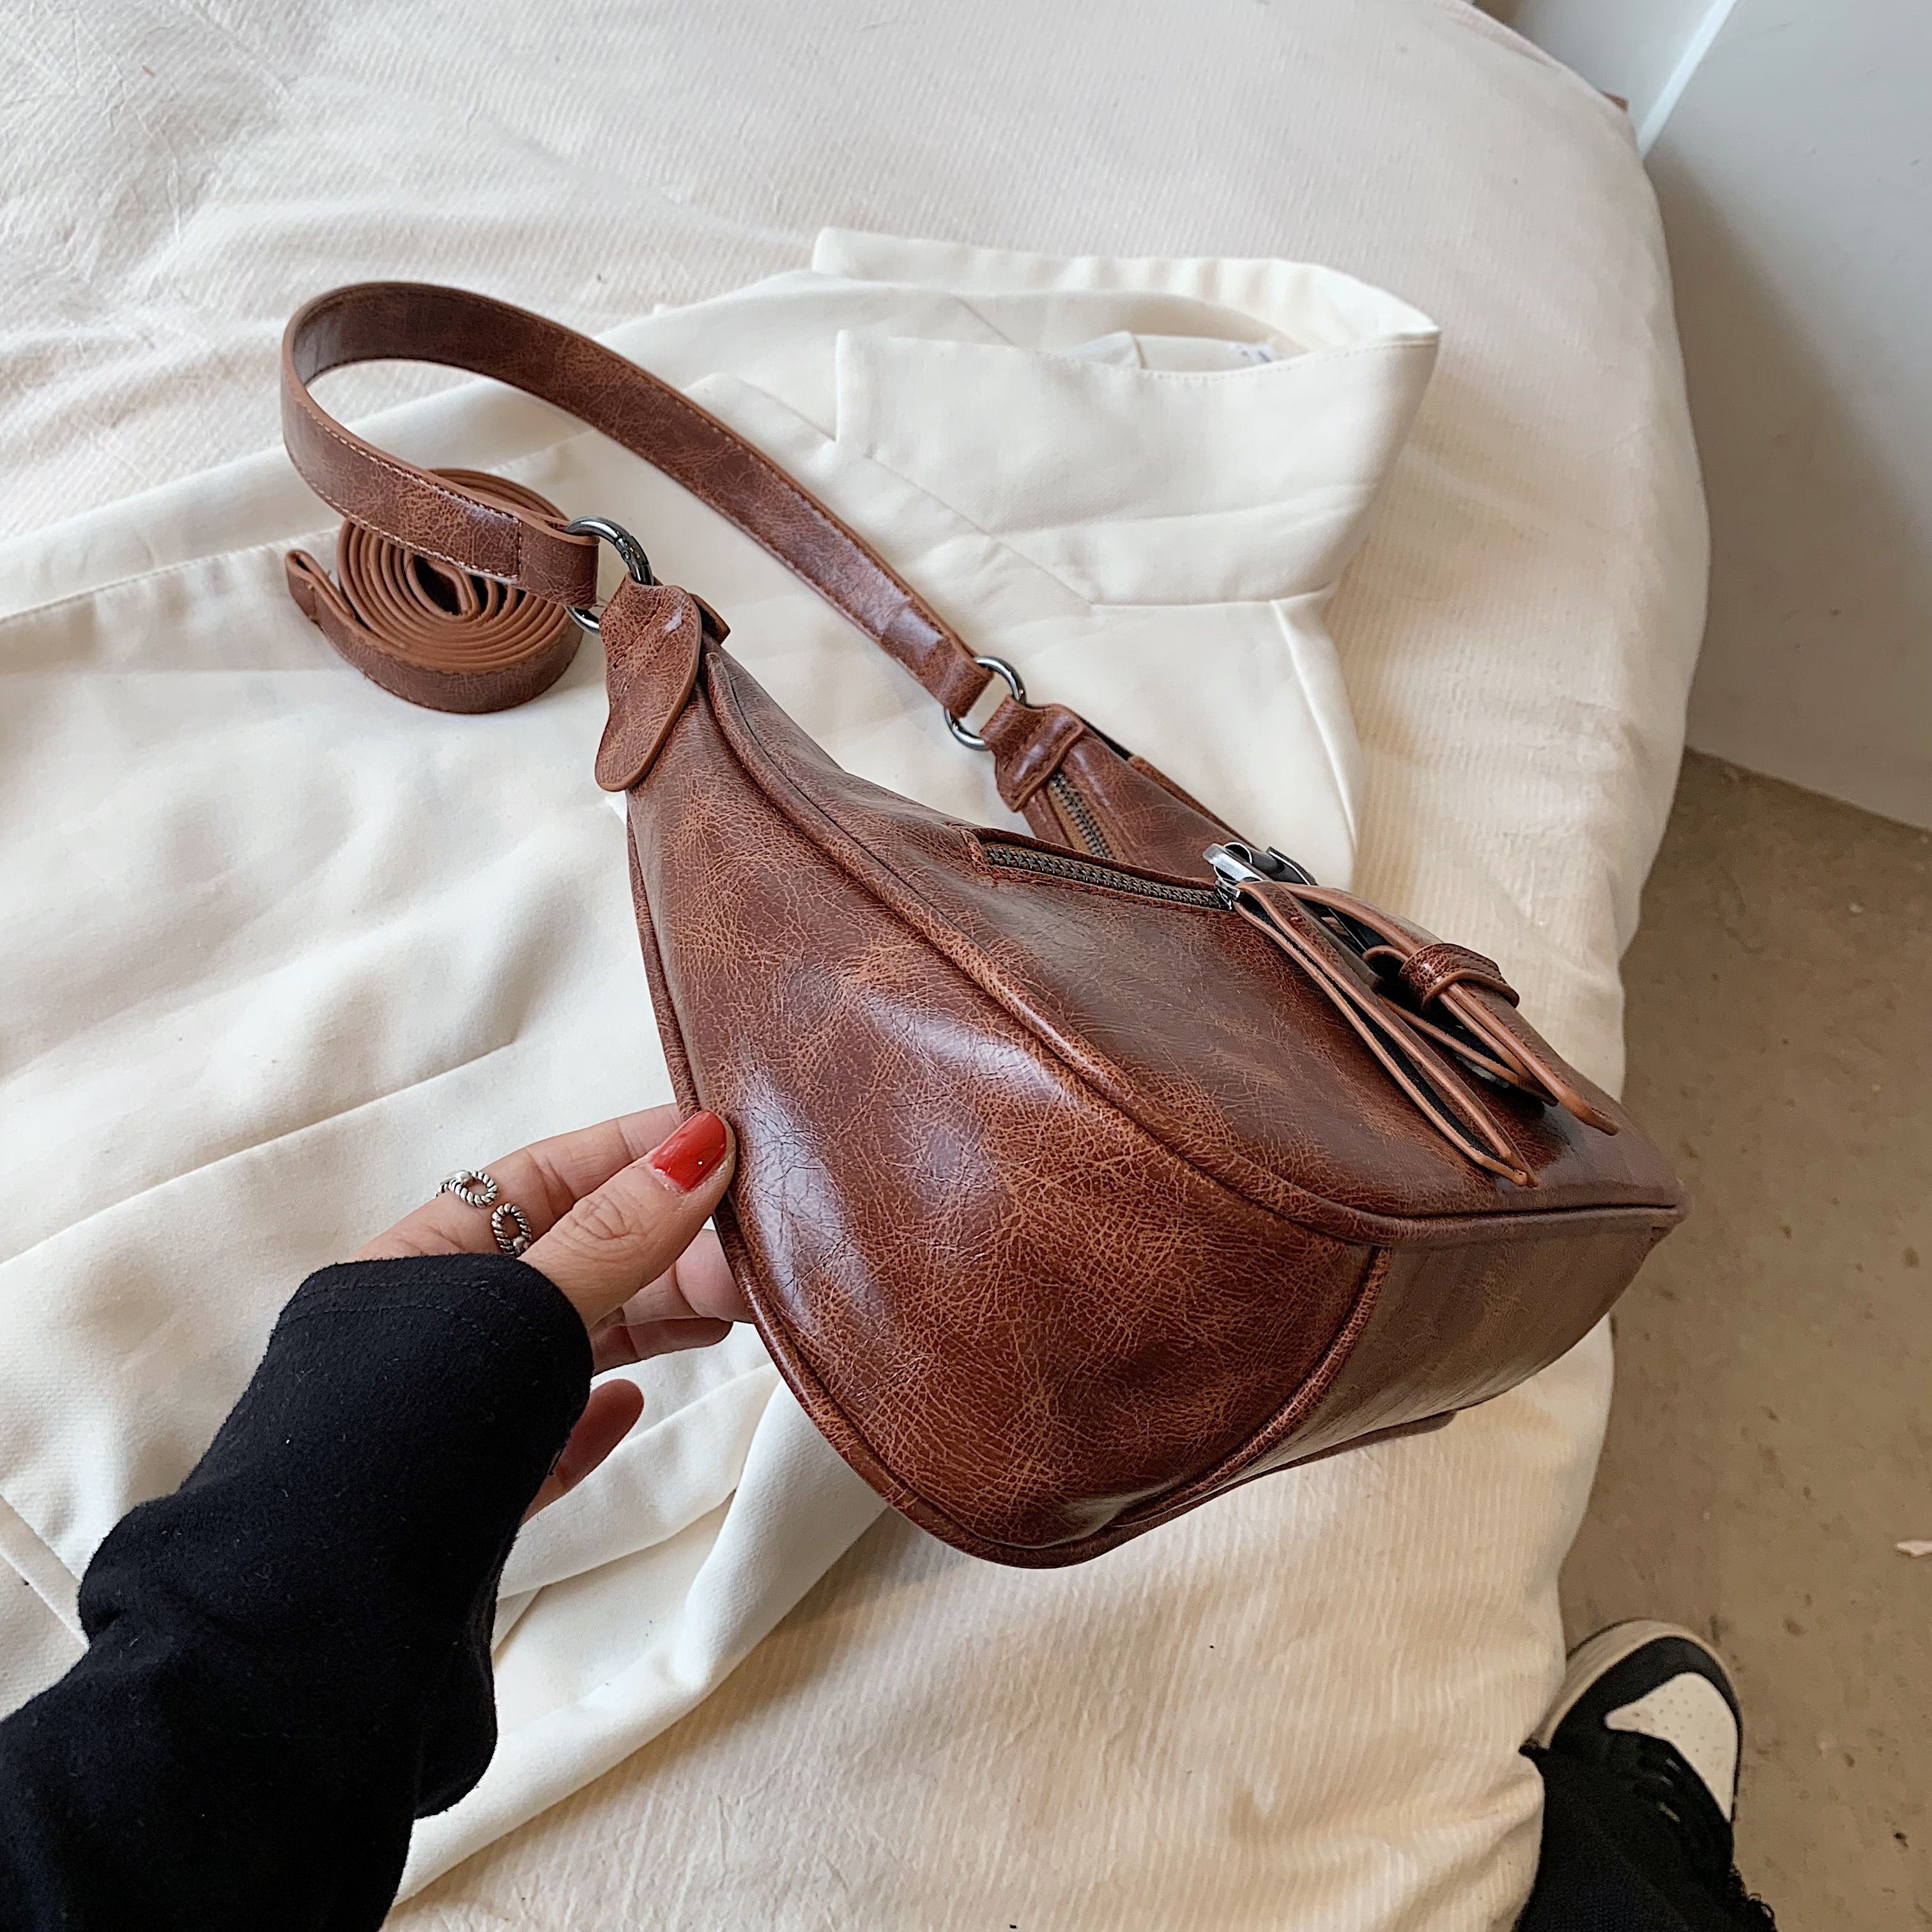 Women Black Shoulder Bag Vintage Handbag Underarm Bag Retro Purse with Buckle Closure